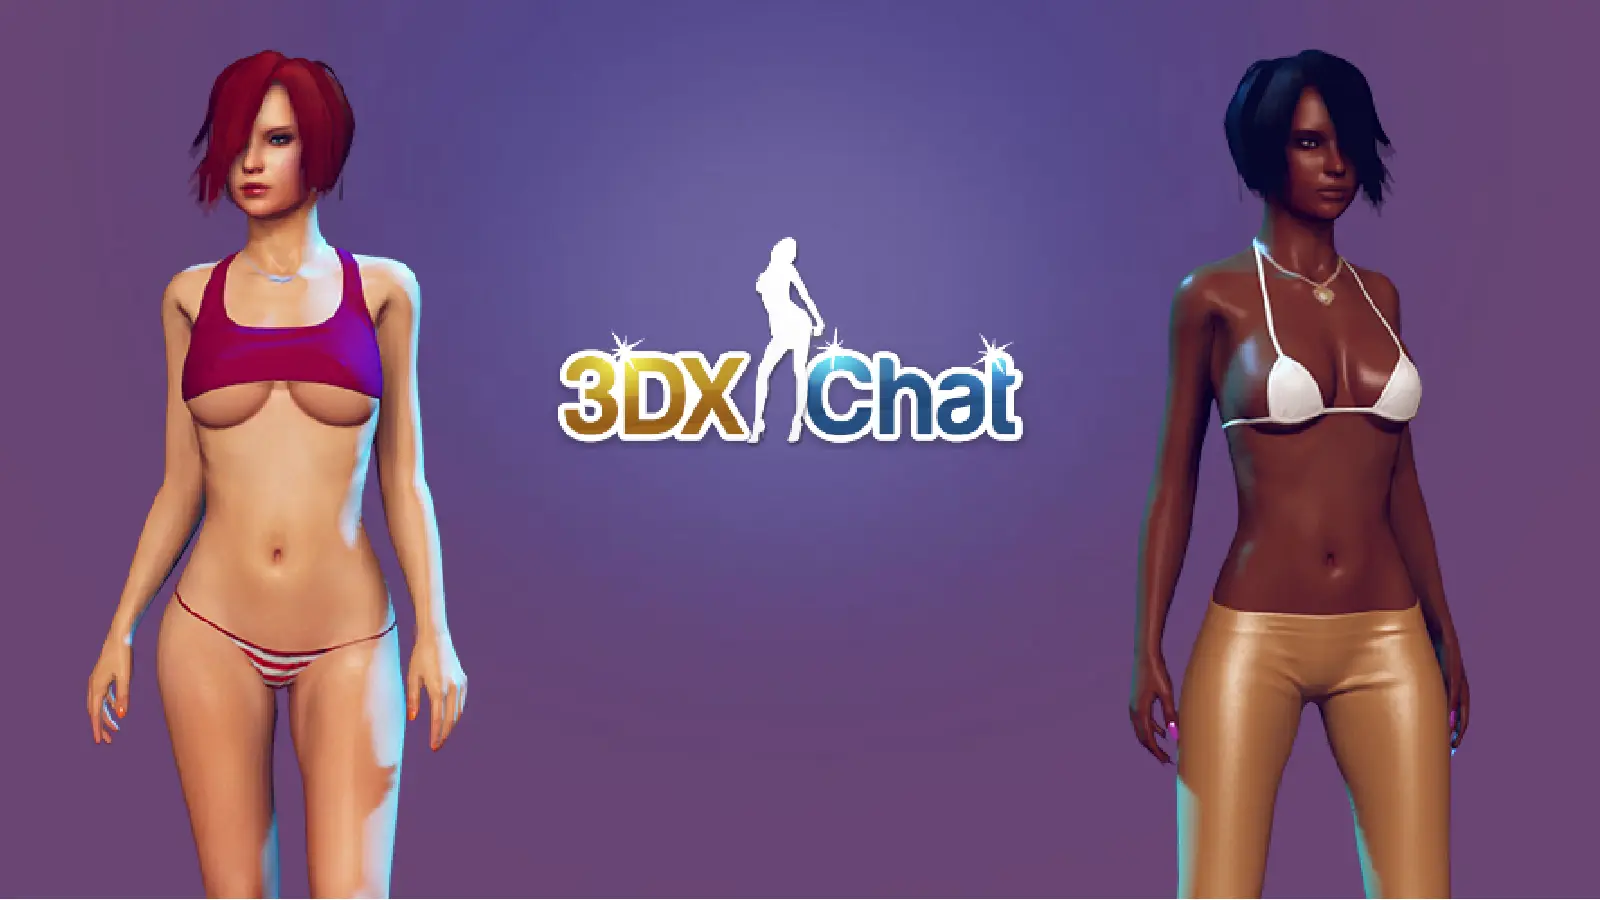 Читы 3DXChat — Все команды для чата